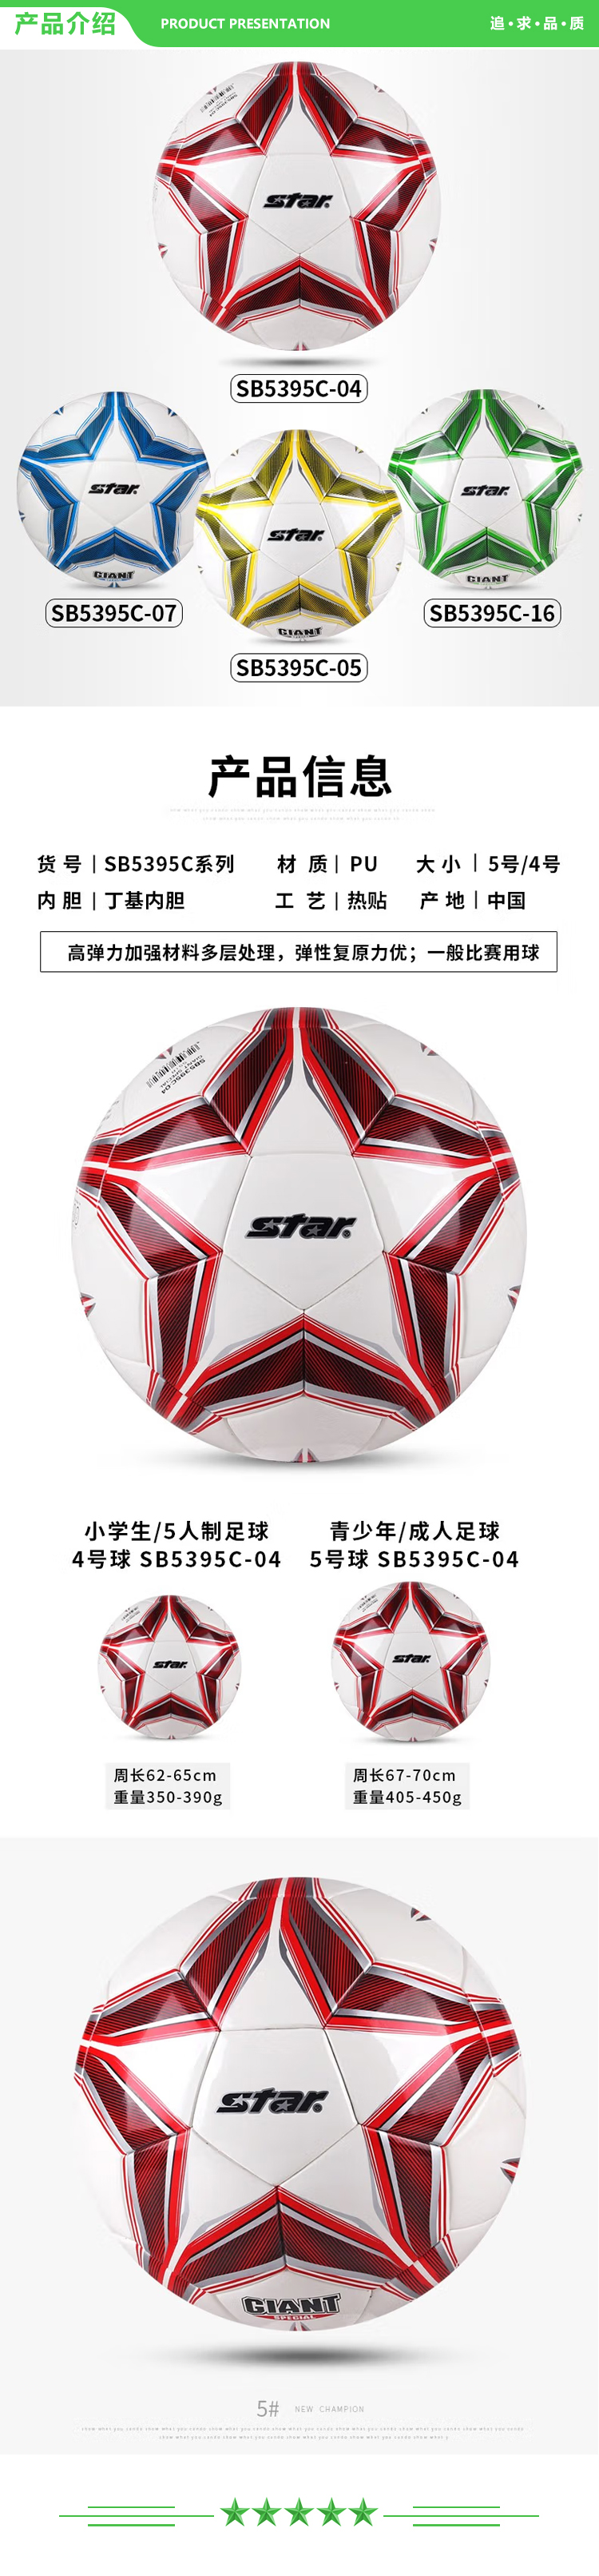 世达 star SB5394C-04（4号青少年用球）足球 成人5号比赛训练用球成人青少年学生耐磨热贴合足球.jpg